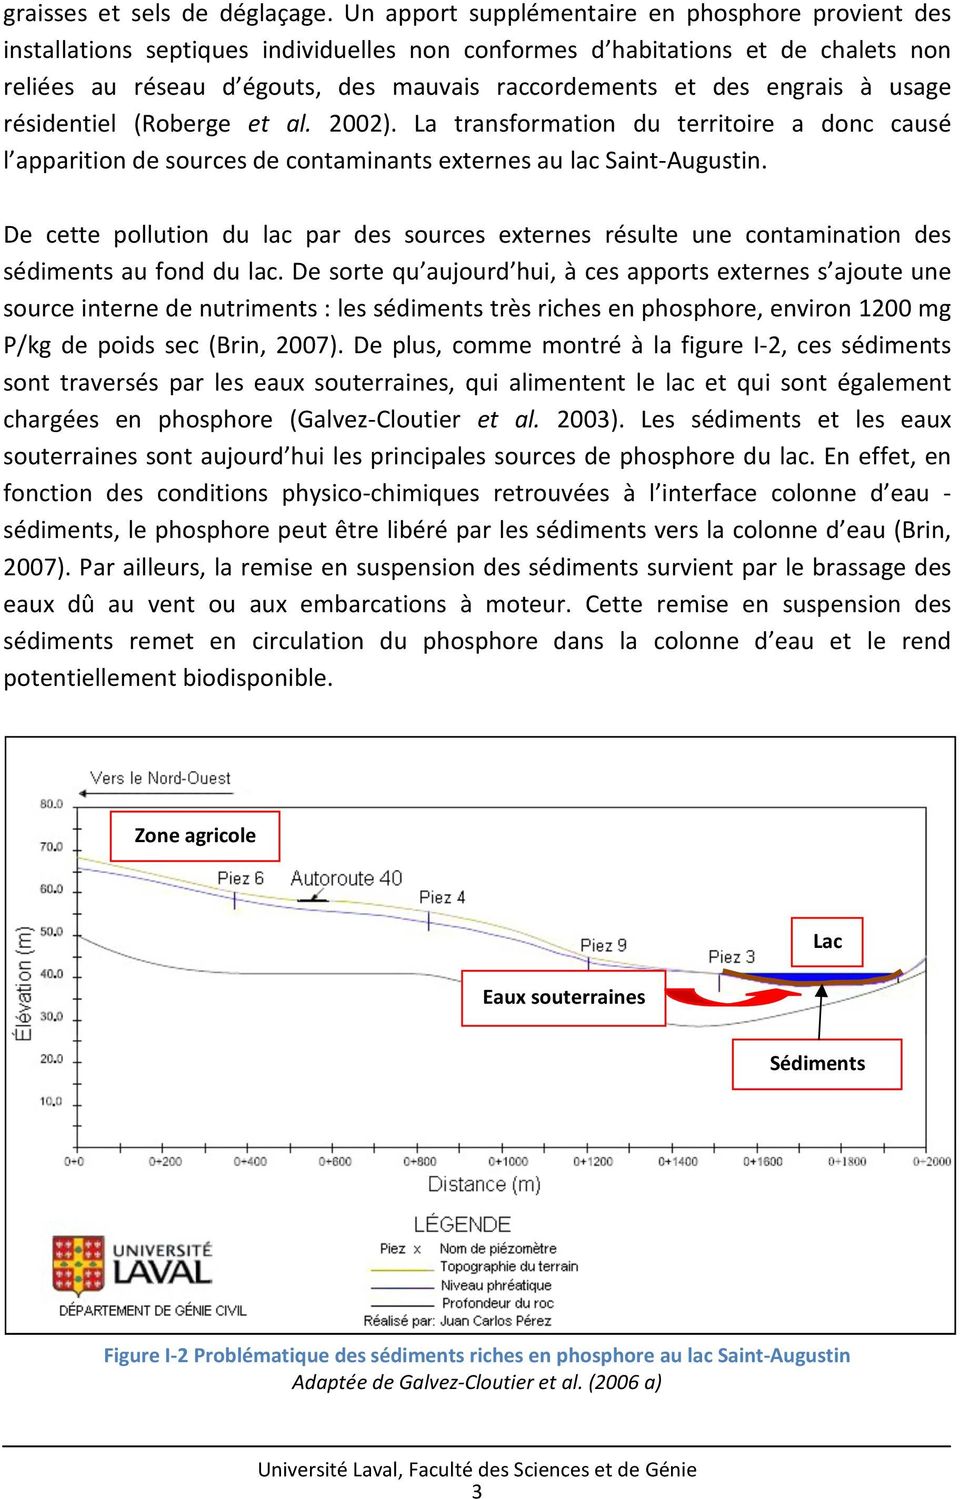 engrais à usage résidentiel (Roberge et al. 2002). La transformation du territoire a donc causé l apparition de sources de contaminants externes au lac Saint-Augustin.